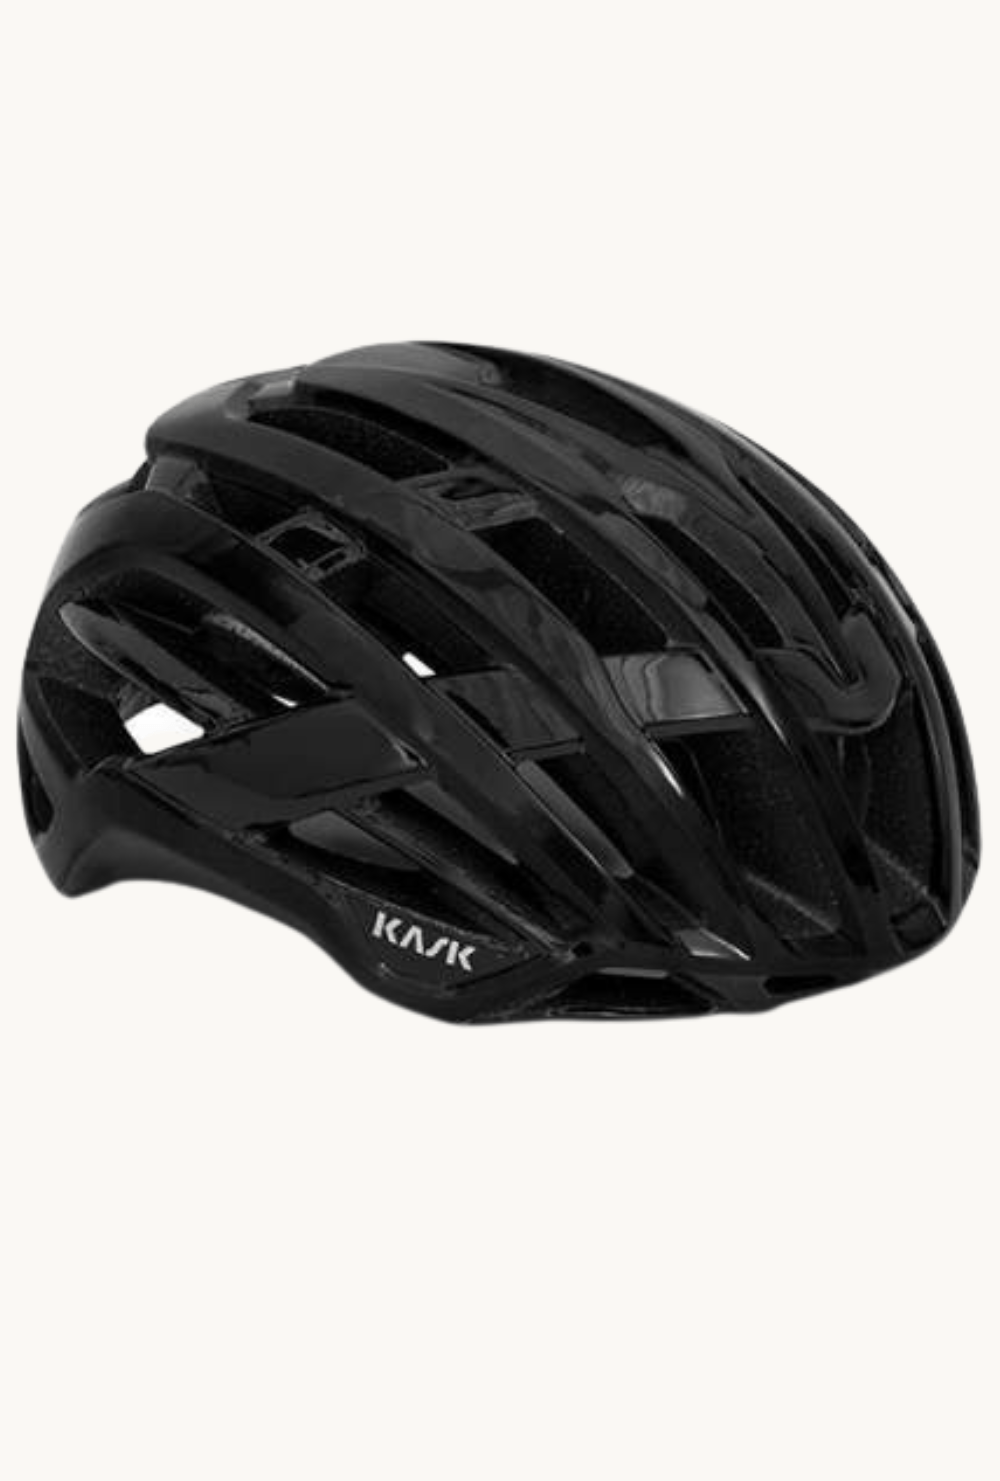 Helmet - Kask Valegro Blacksmall / Black